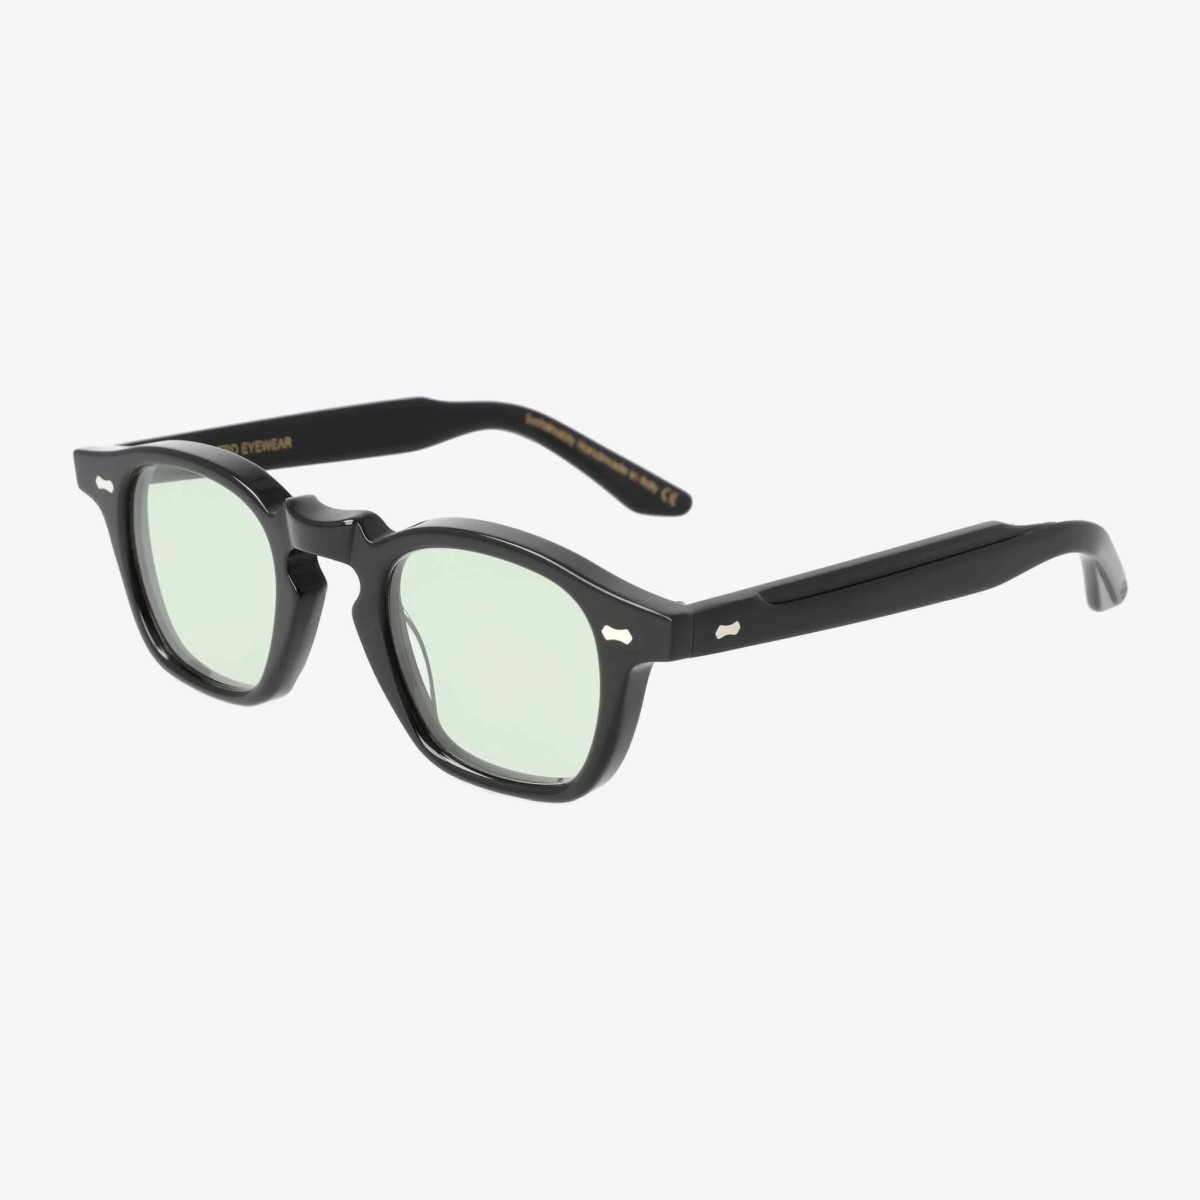 TBD Eyewear Cord saulės akiniai juodais rėmeliais ir žaliais lęšiais